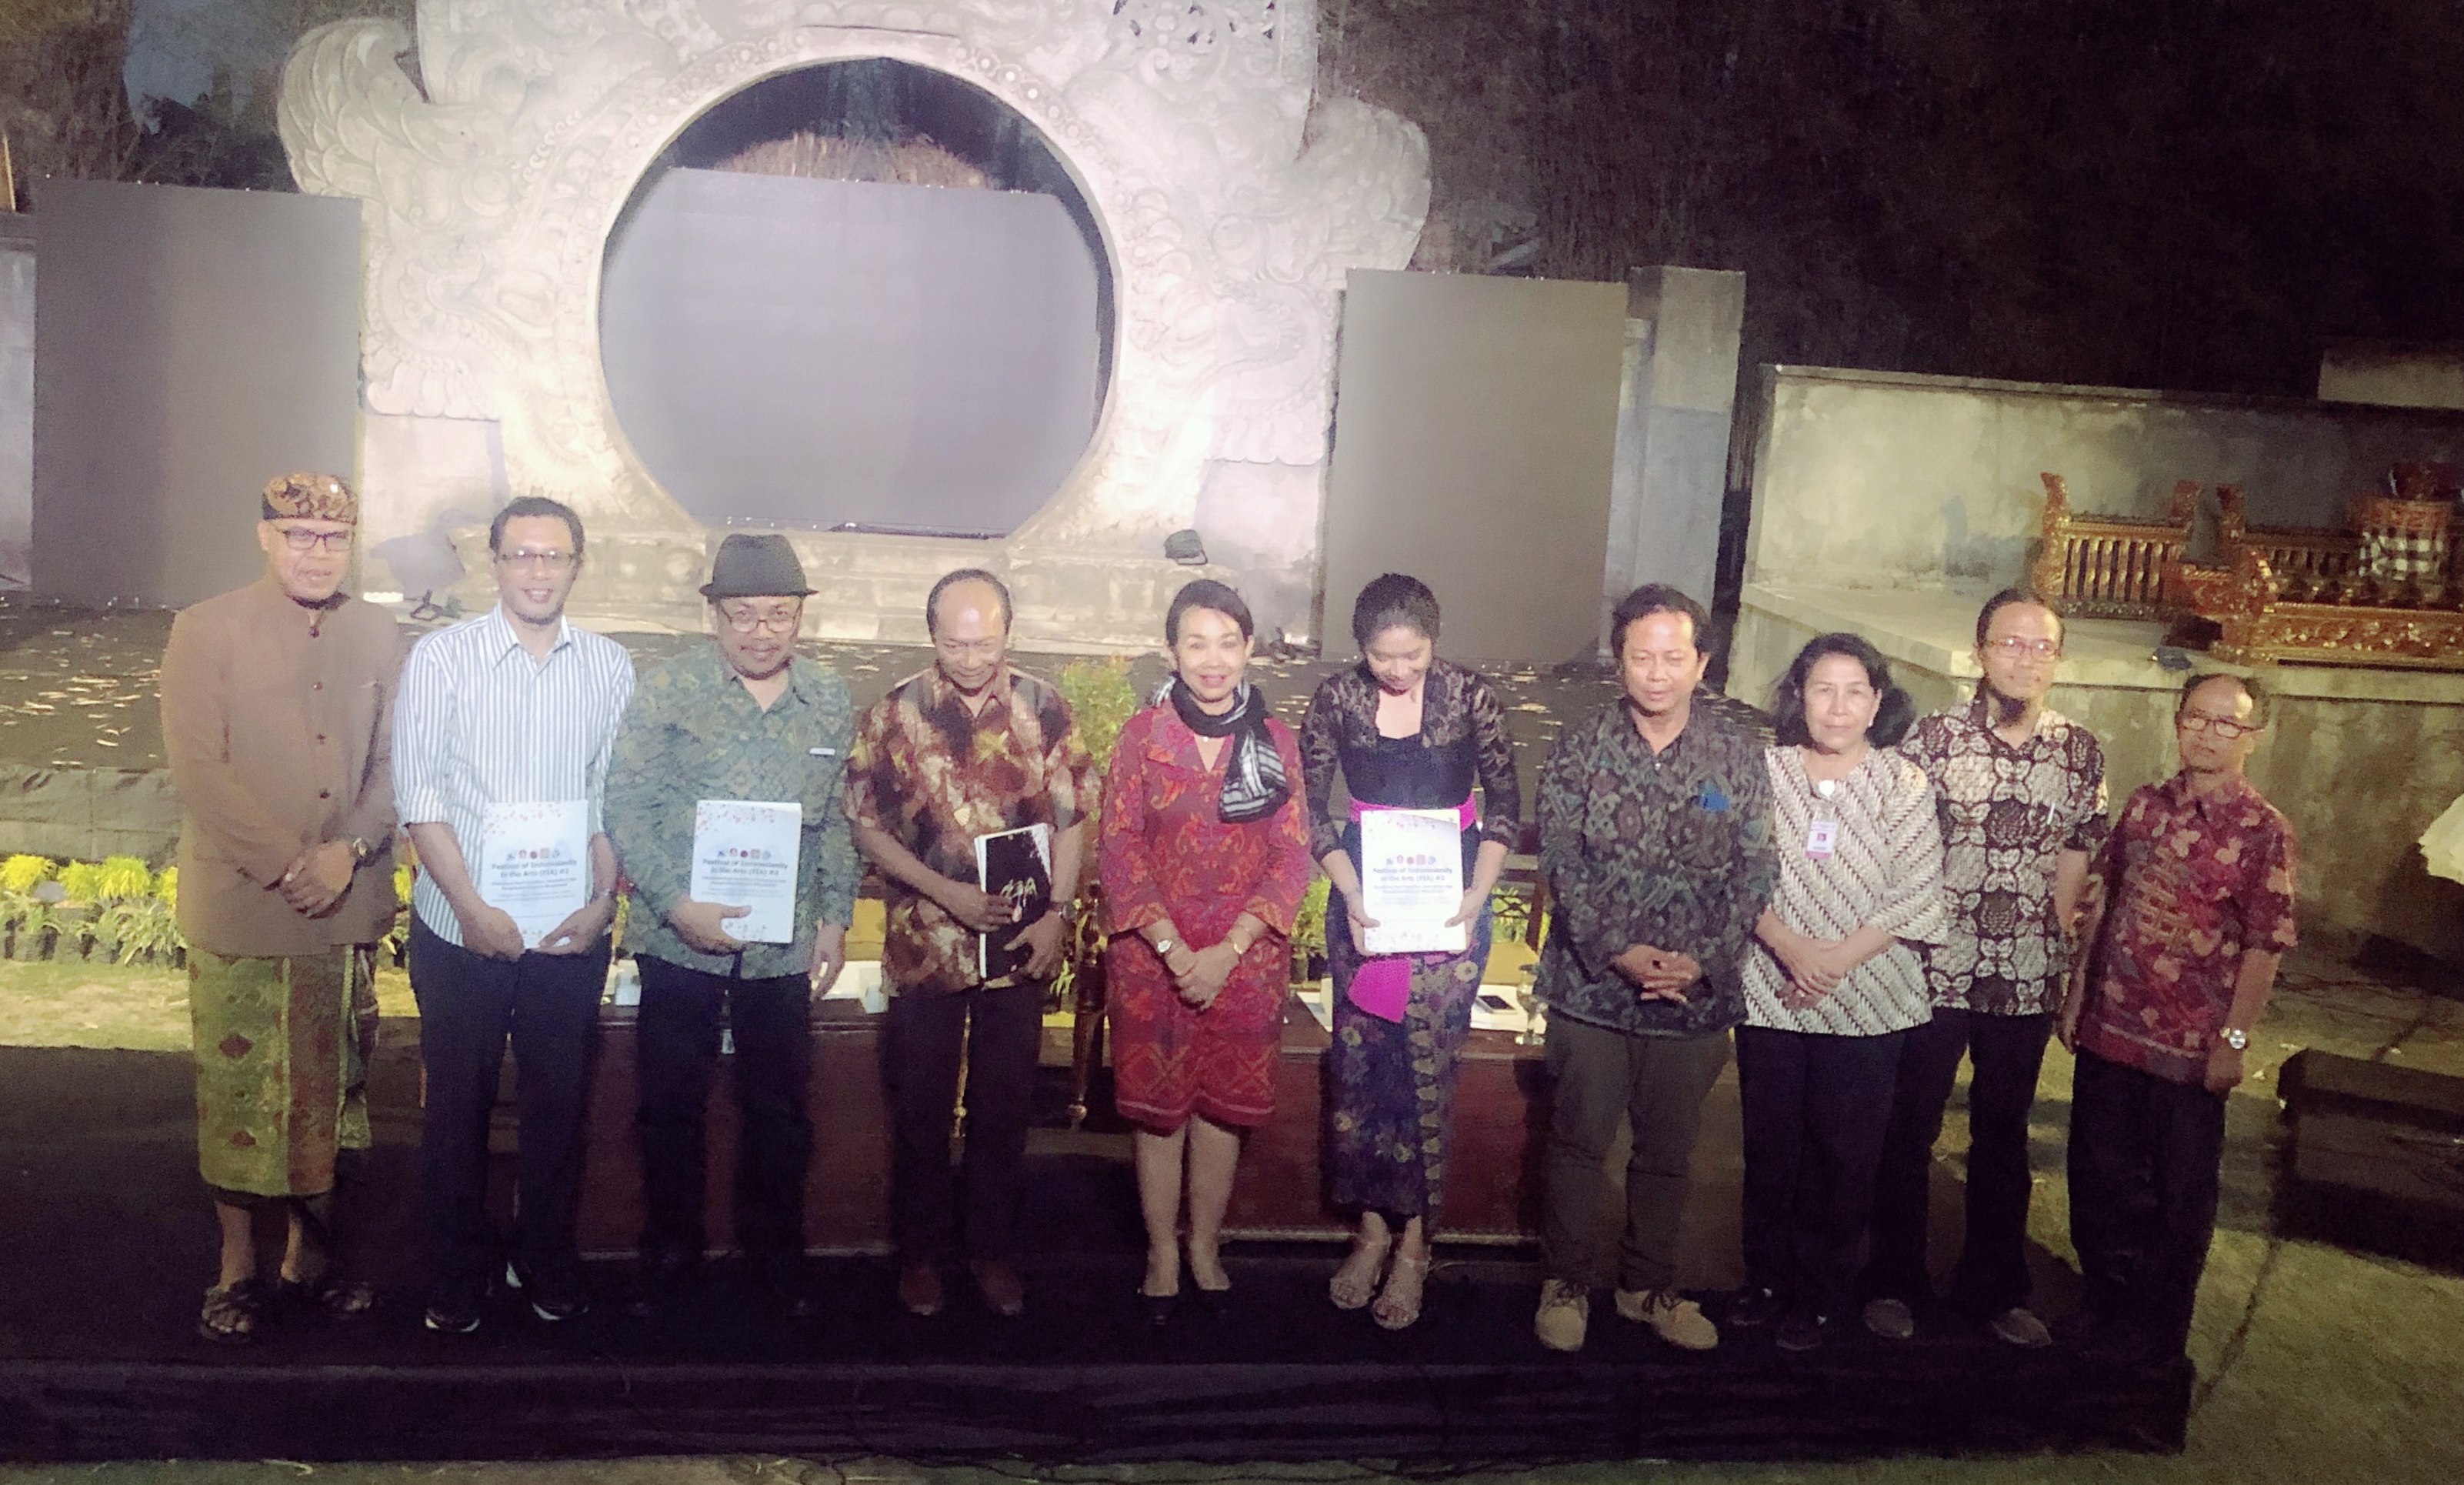 24-28 September, ISI Denpasar adakan festival “Art” untuk sosialisasikan penelitian